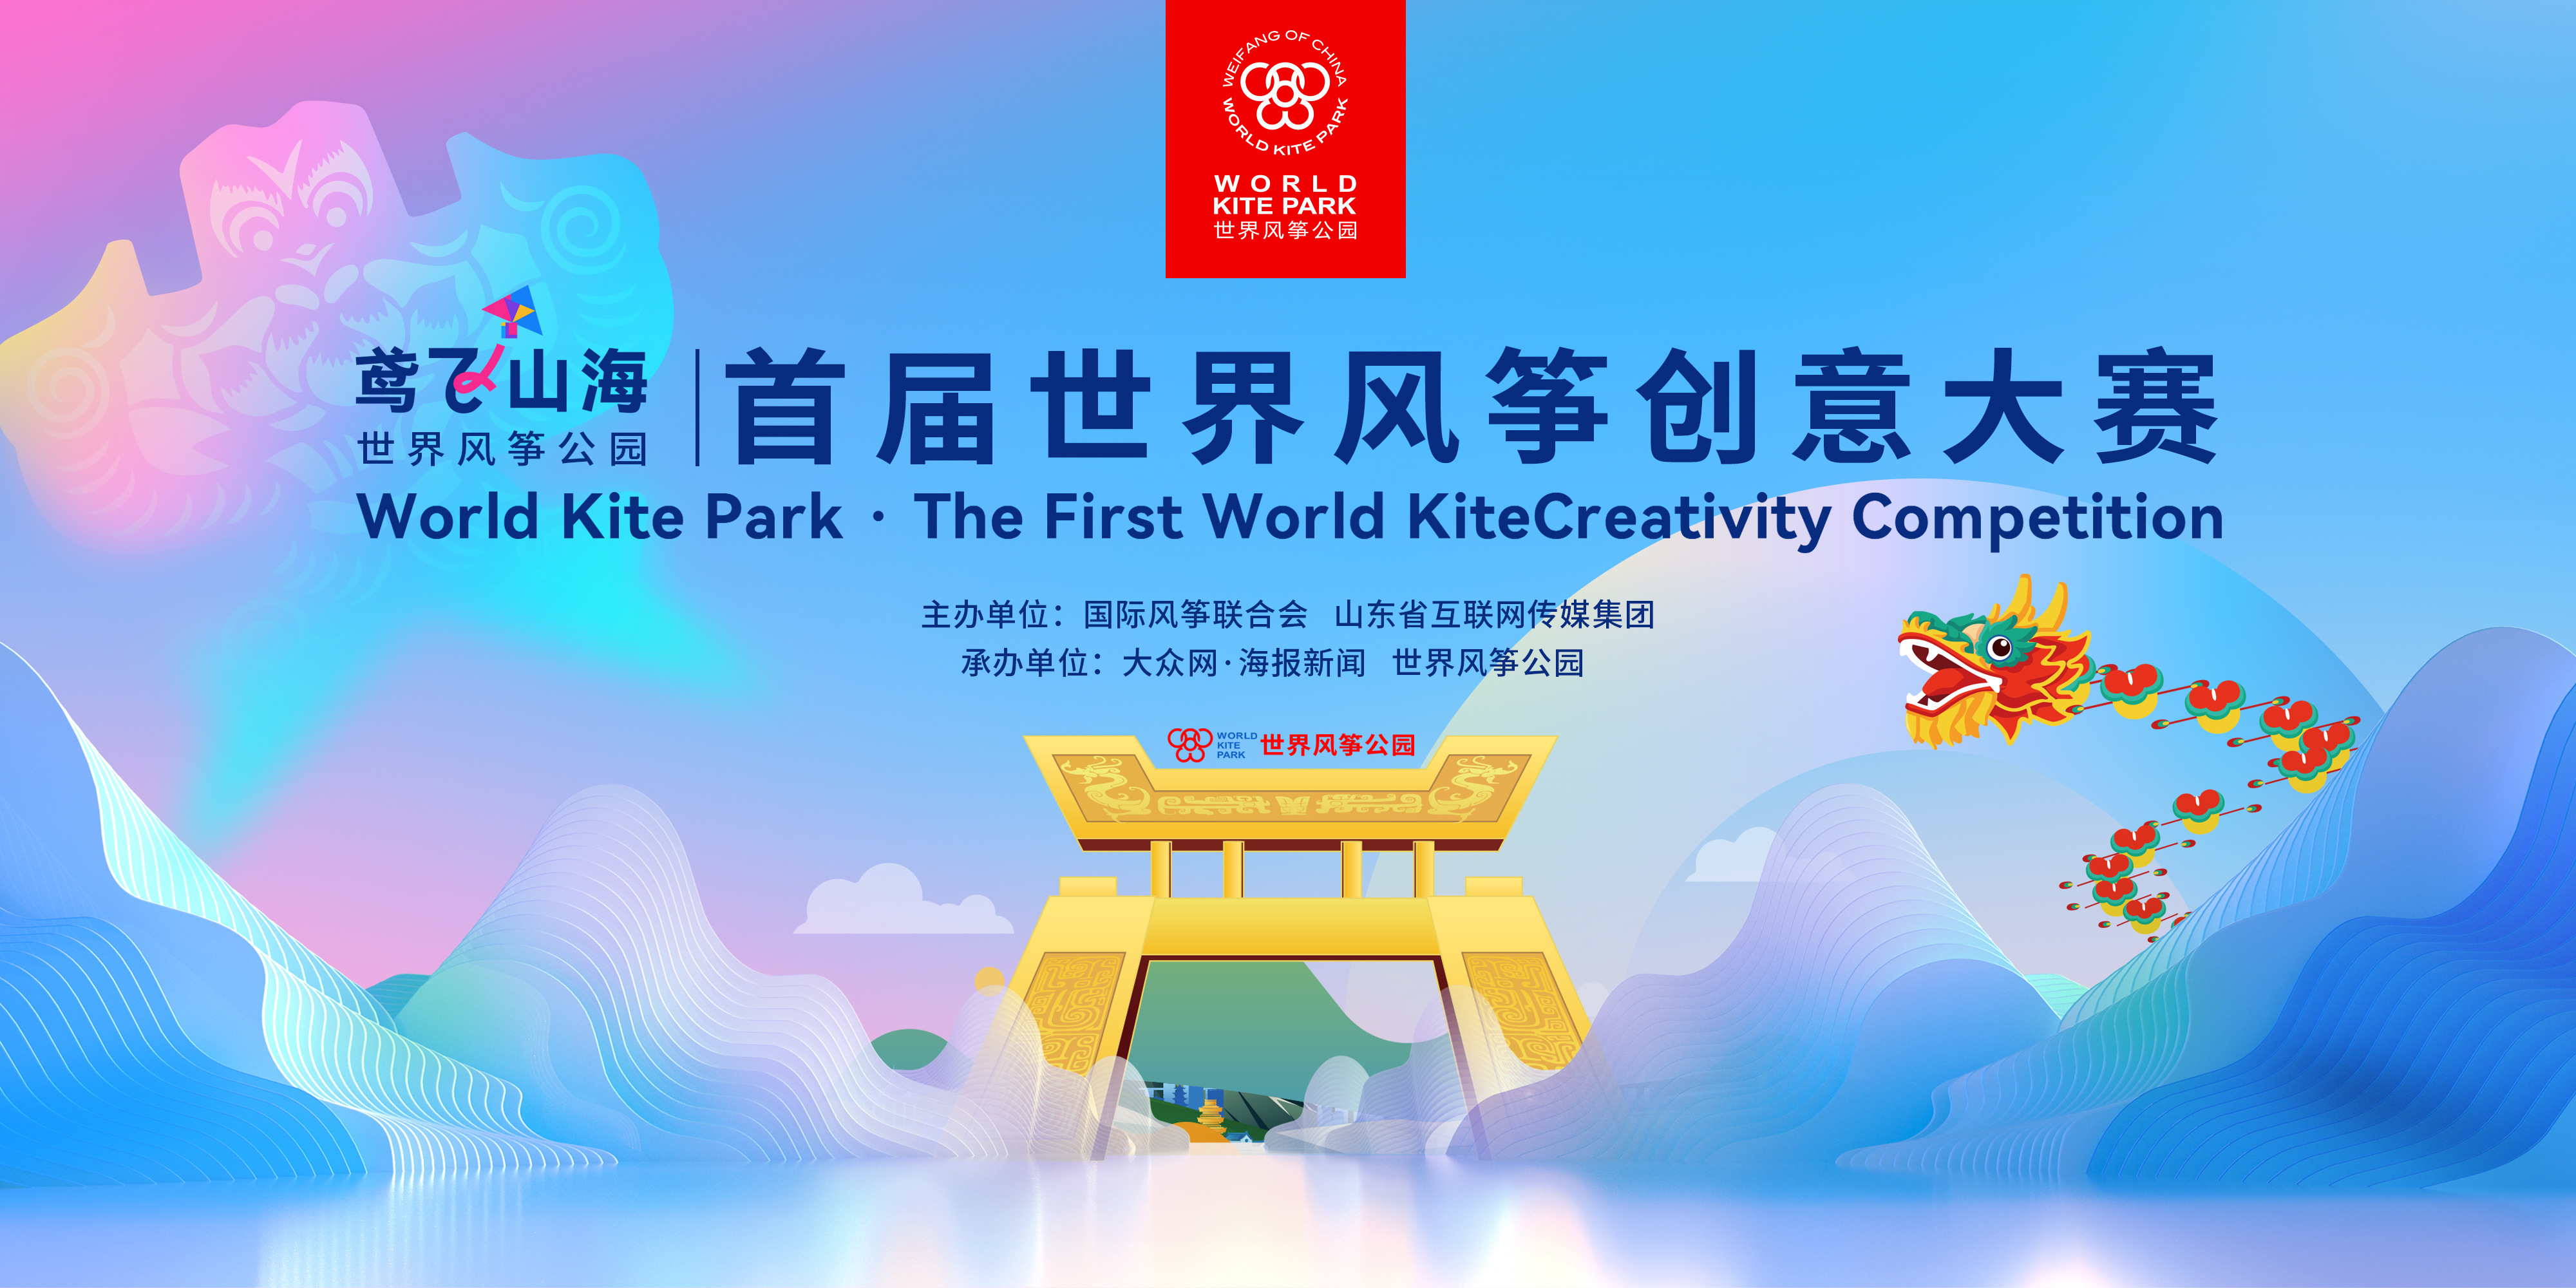 世界风筝公园首届世界风筝创意大赛启动 世界风筝公园大型情境演艺项目发布仪式在潍坊举行